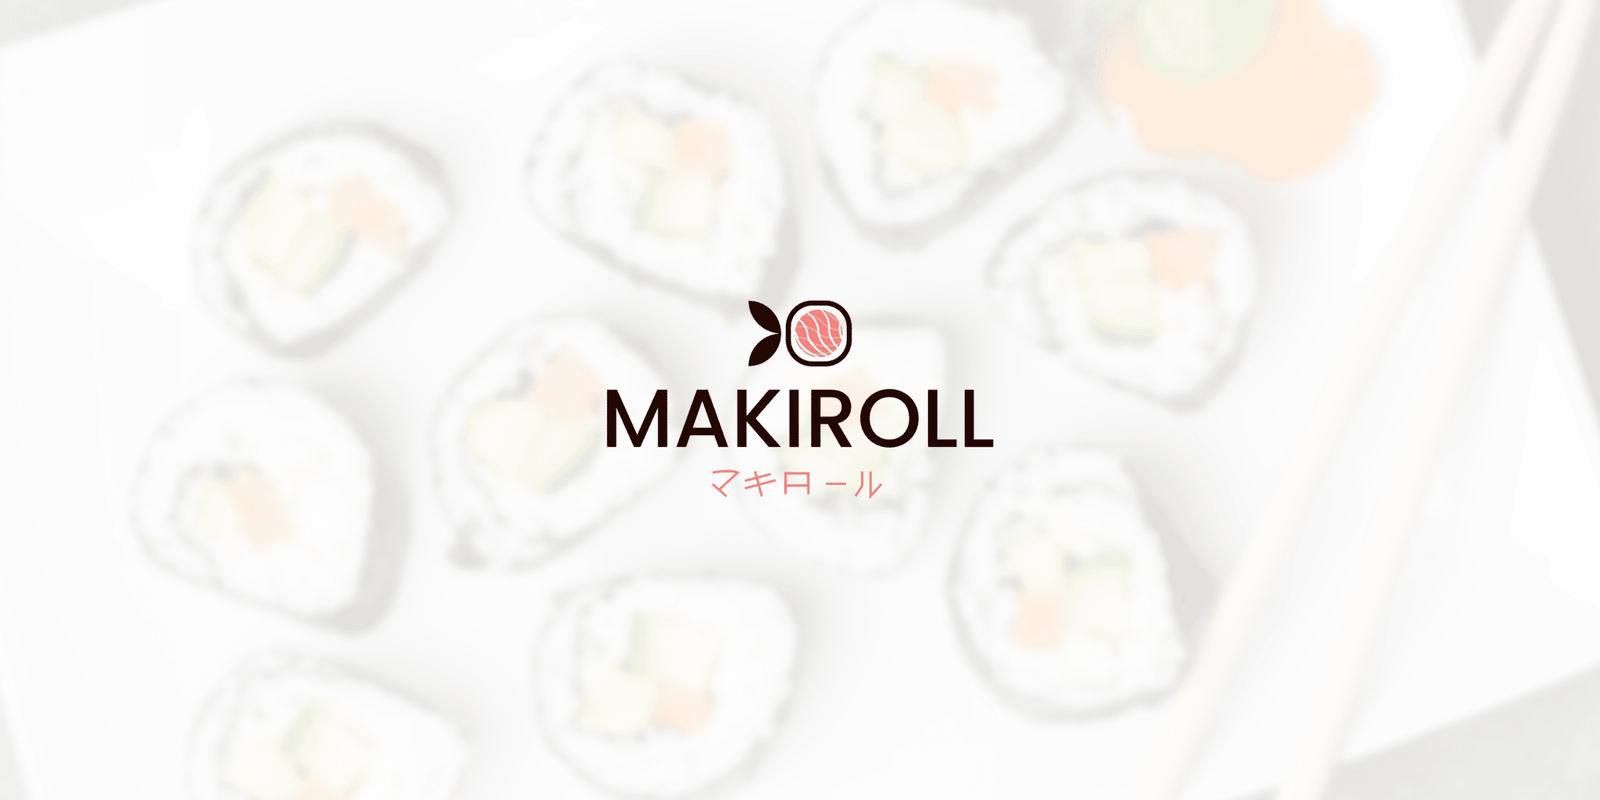 Maki Roll 34